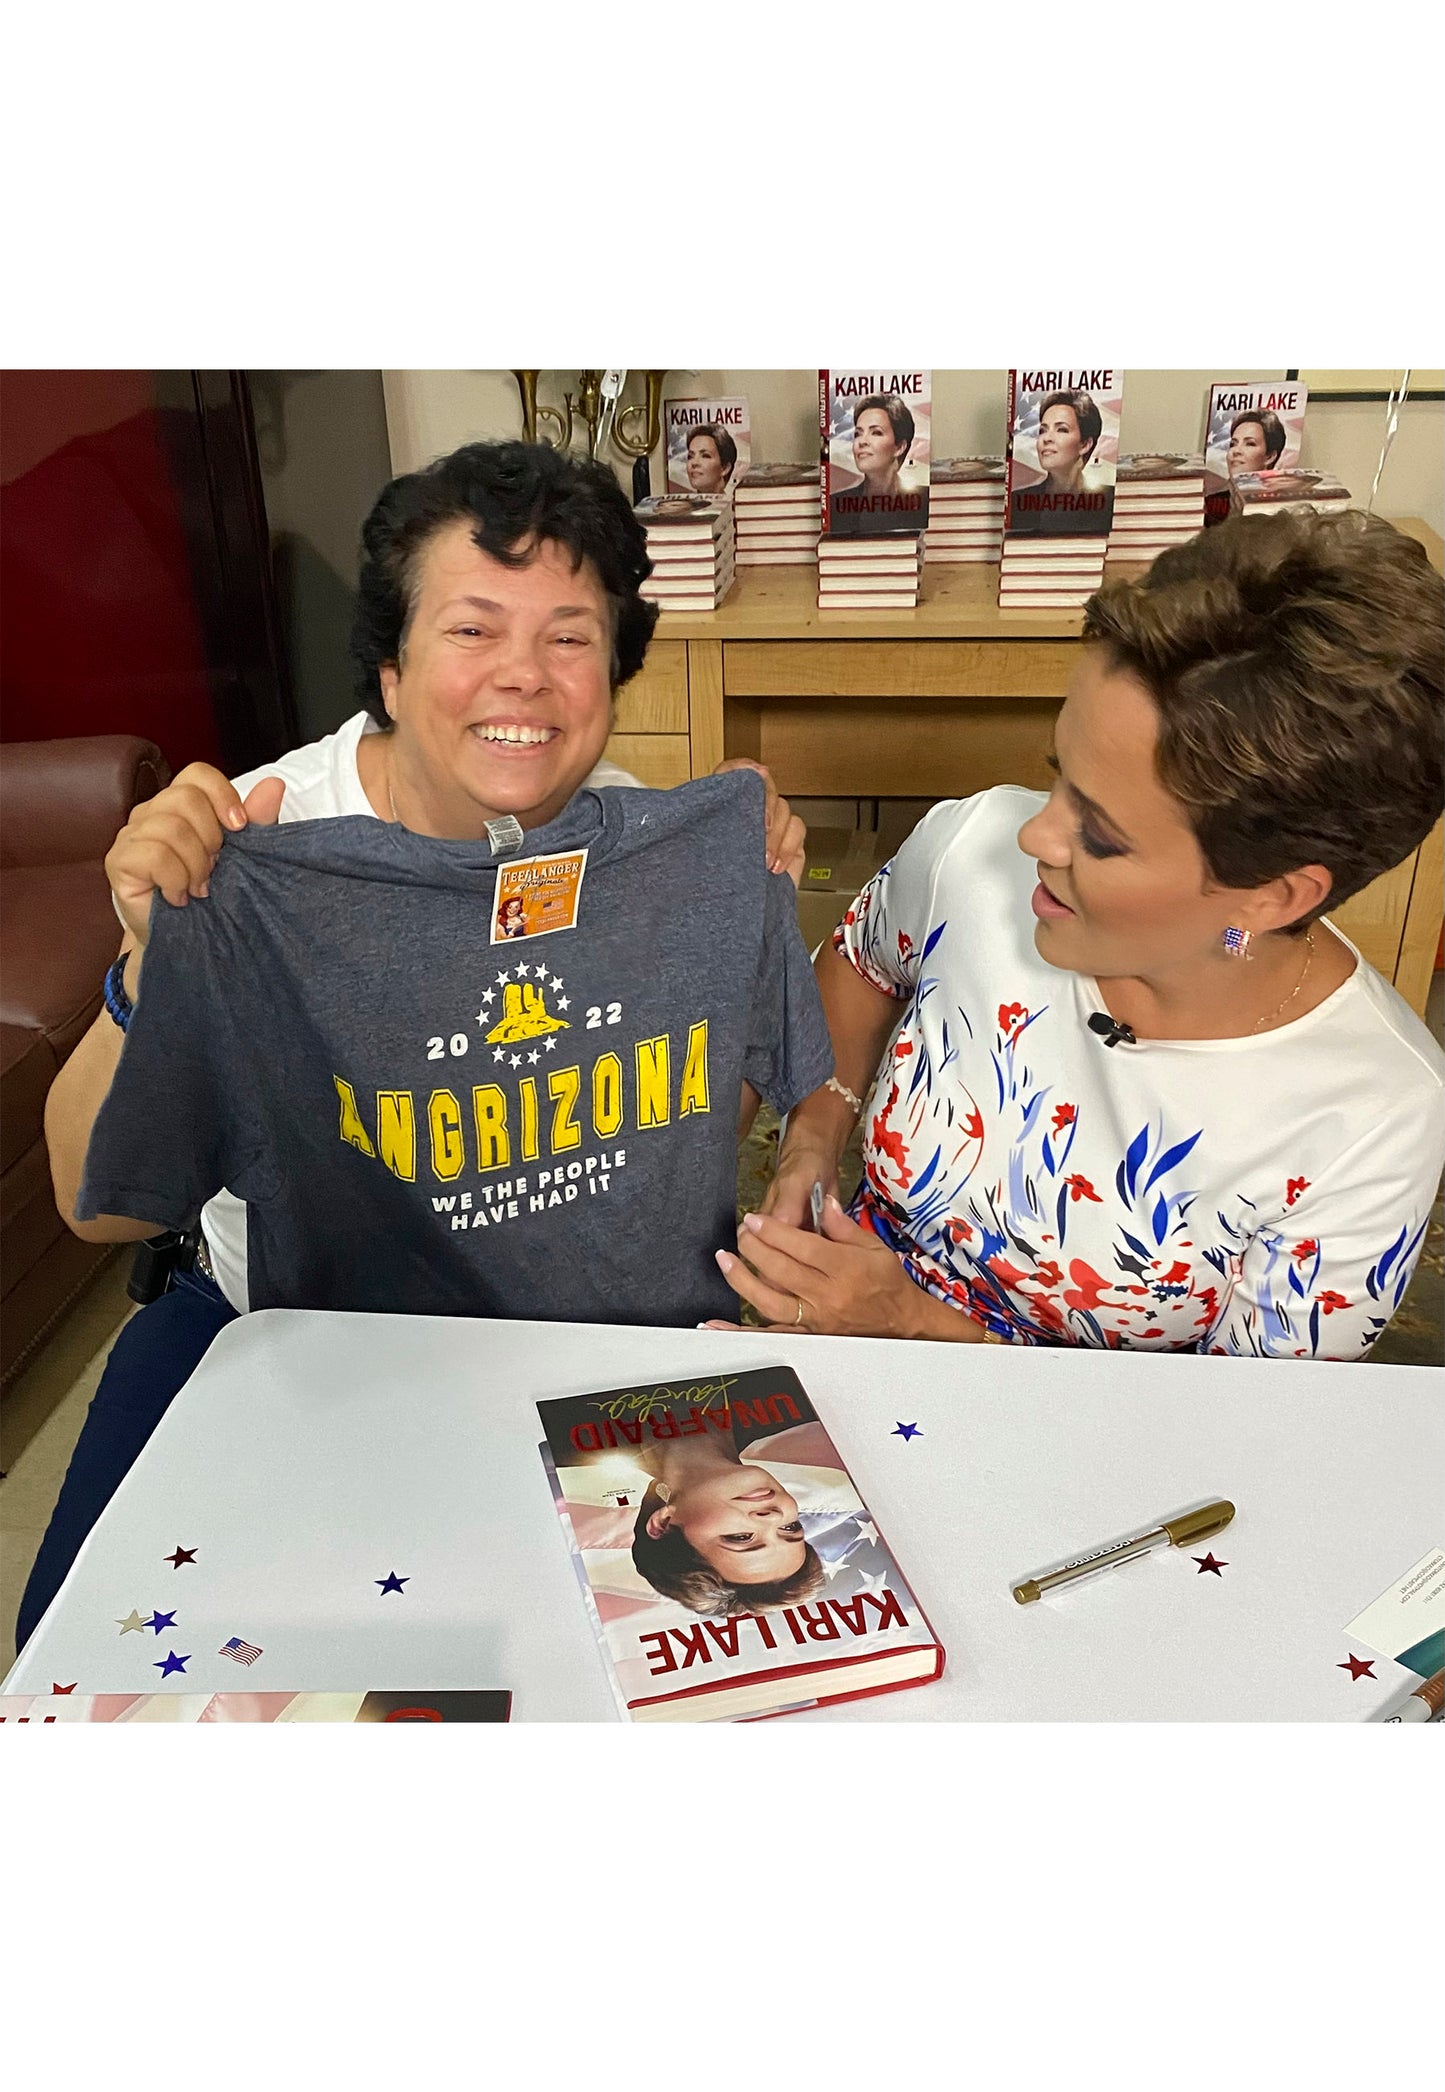 Kari Lake with Angrizona t-shirt at book signing